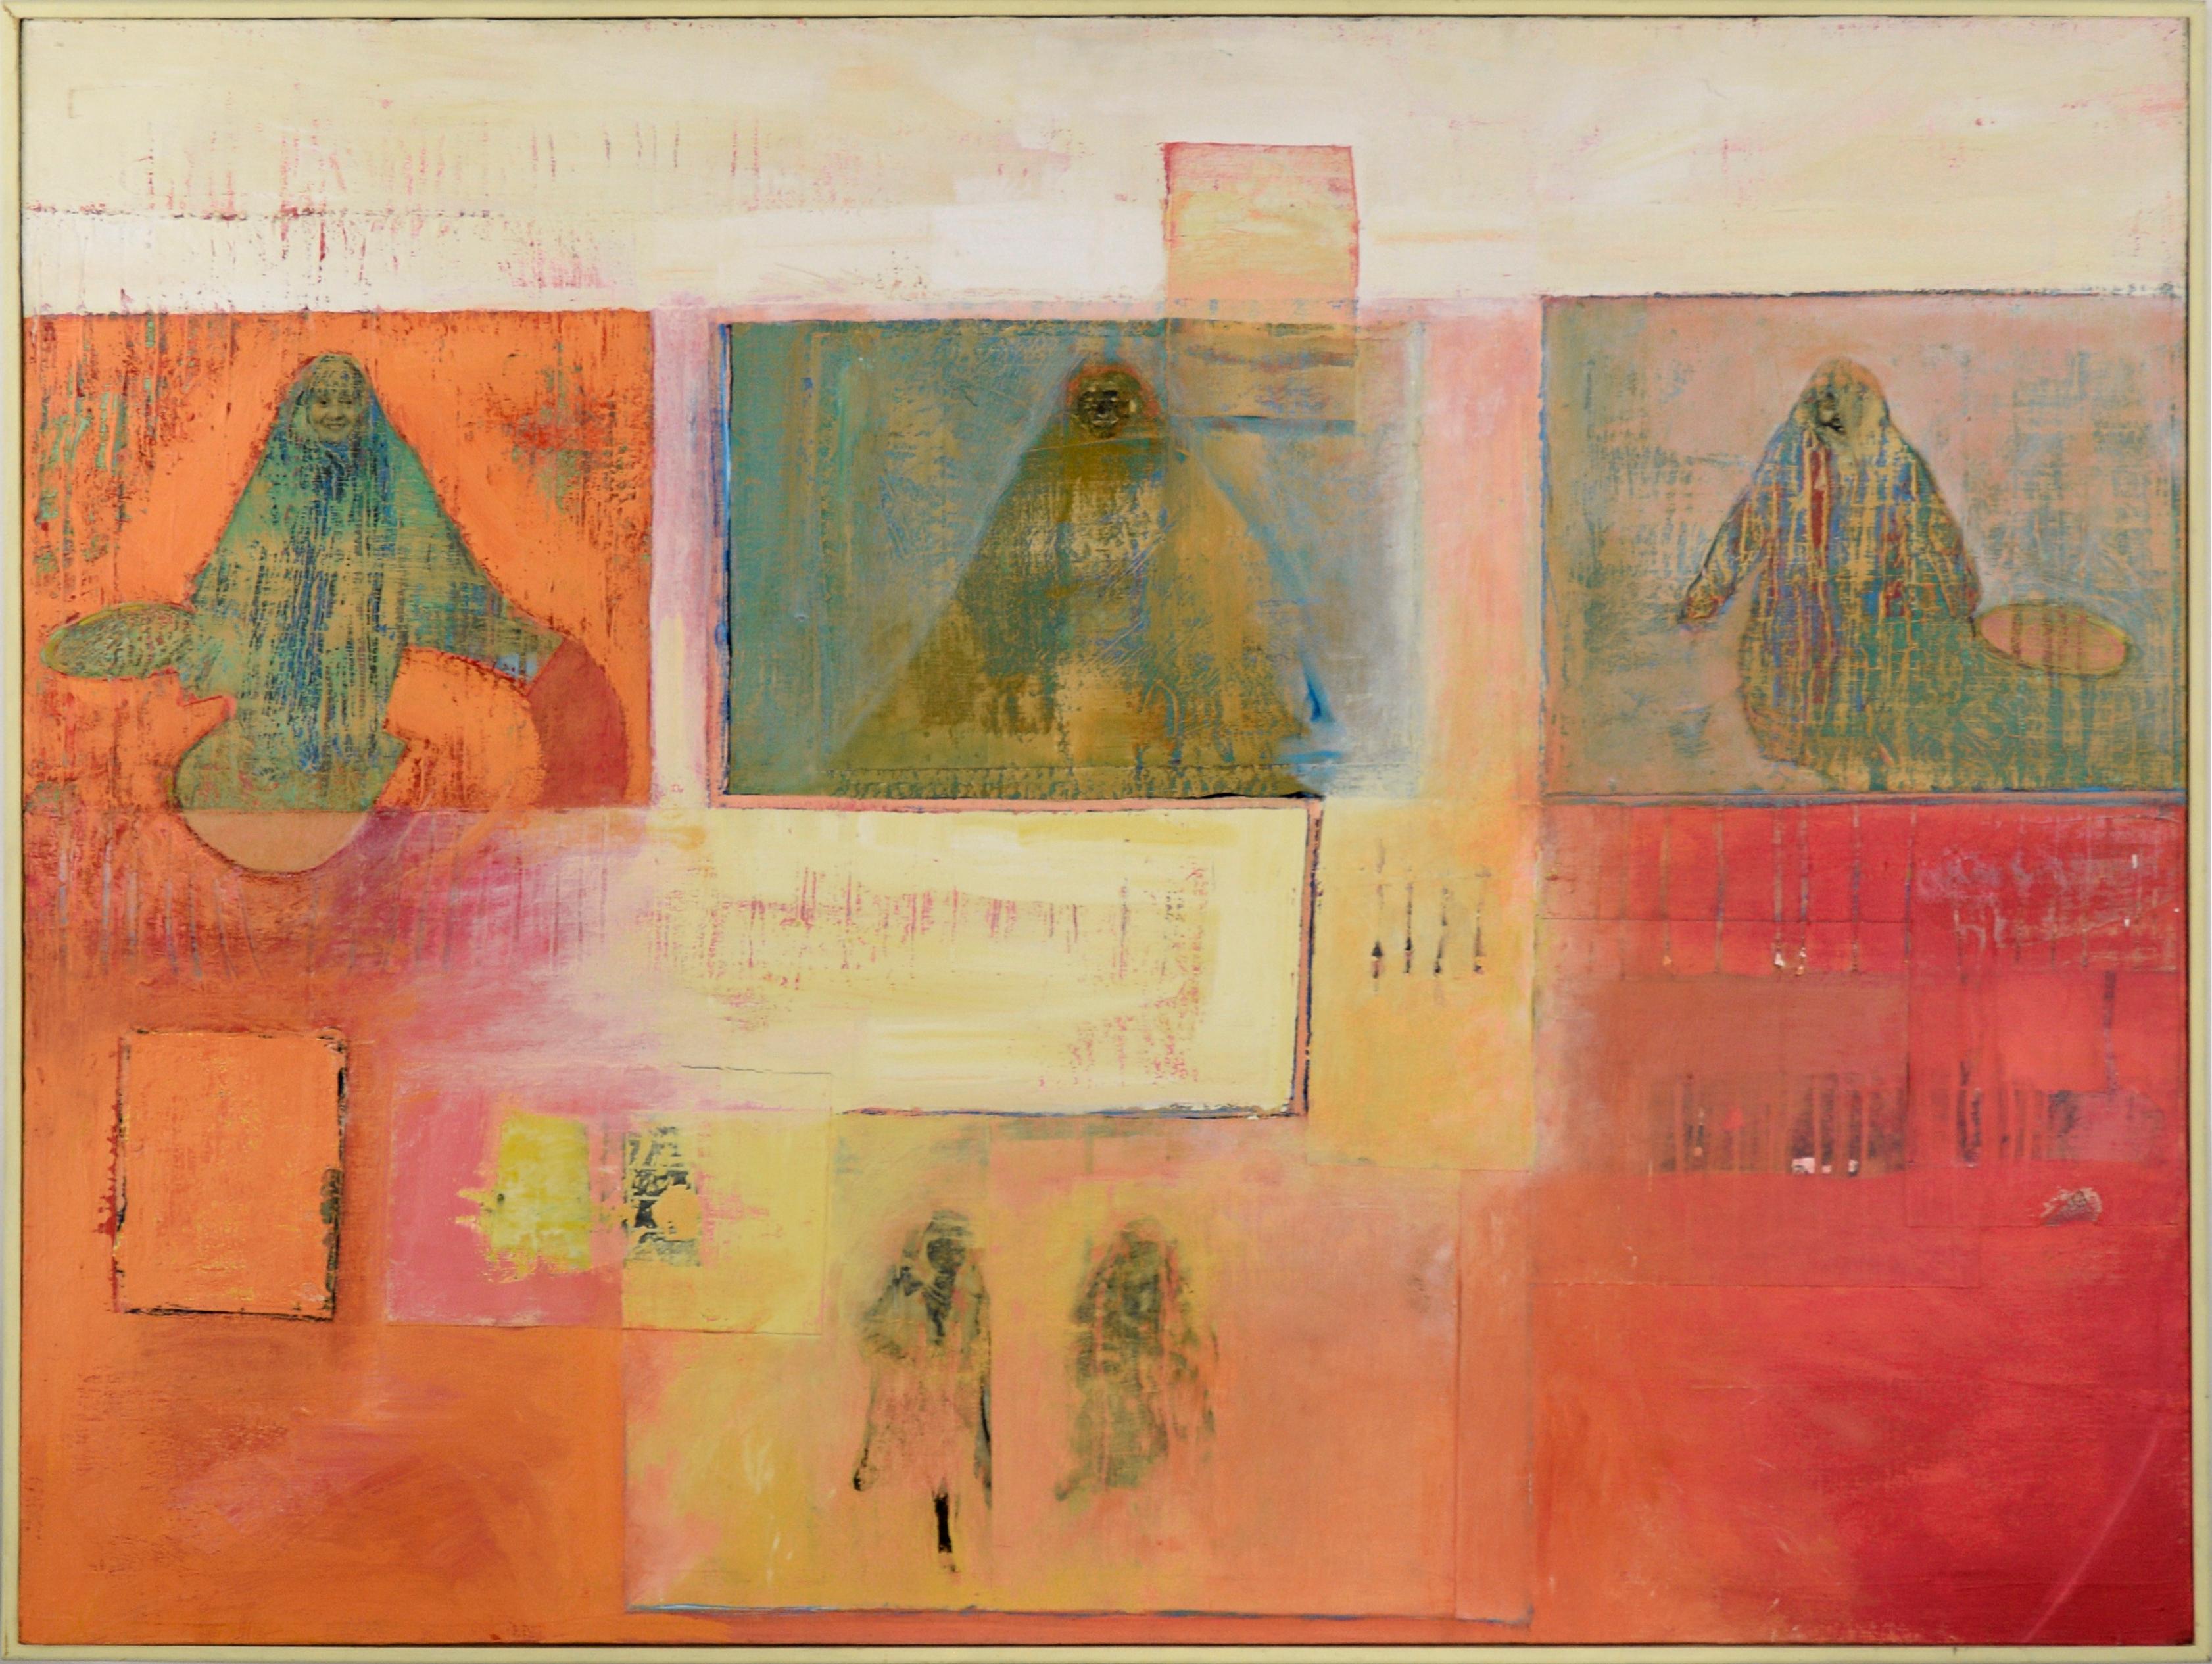 Abstract Painting Elizabeth Arrington Leaf - "Let Me In, Let Me Out" - Composition abstraite en techniques mixtes